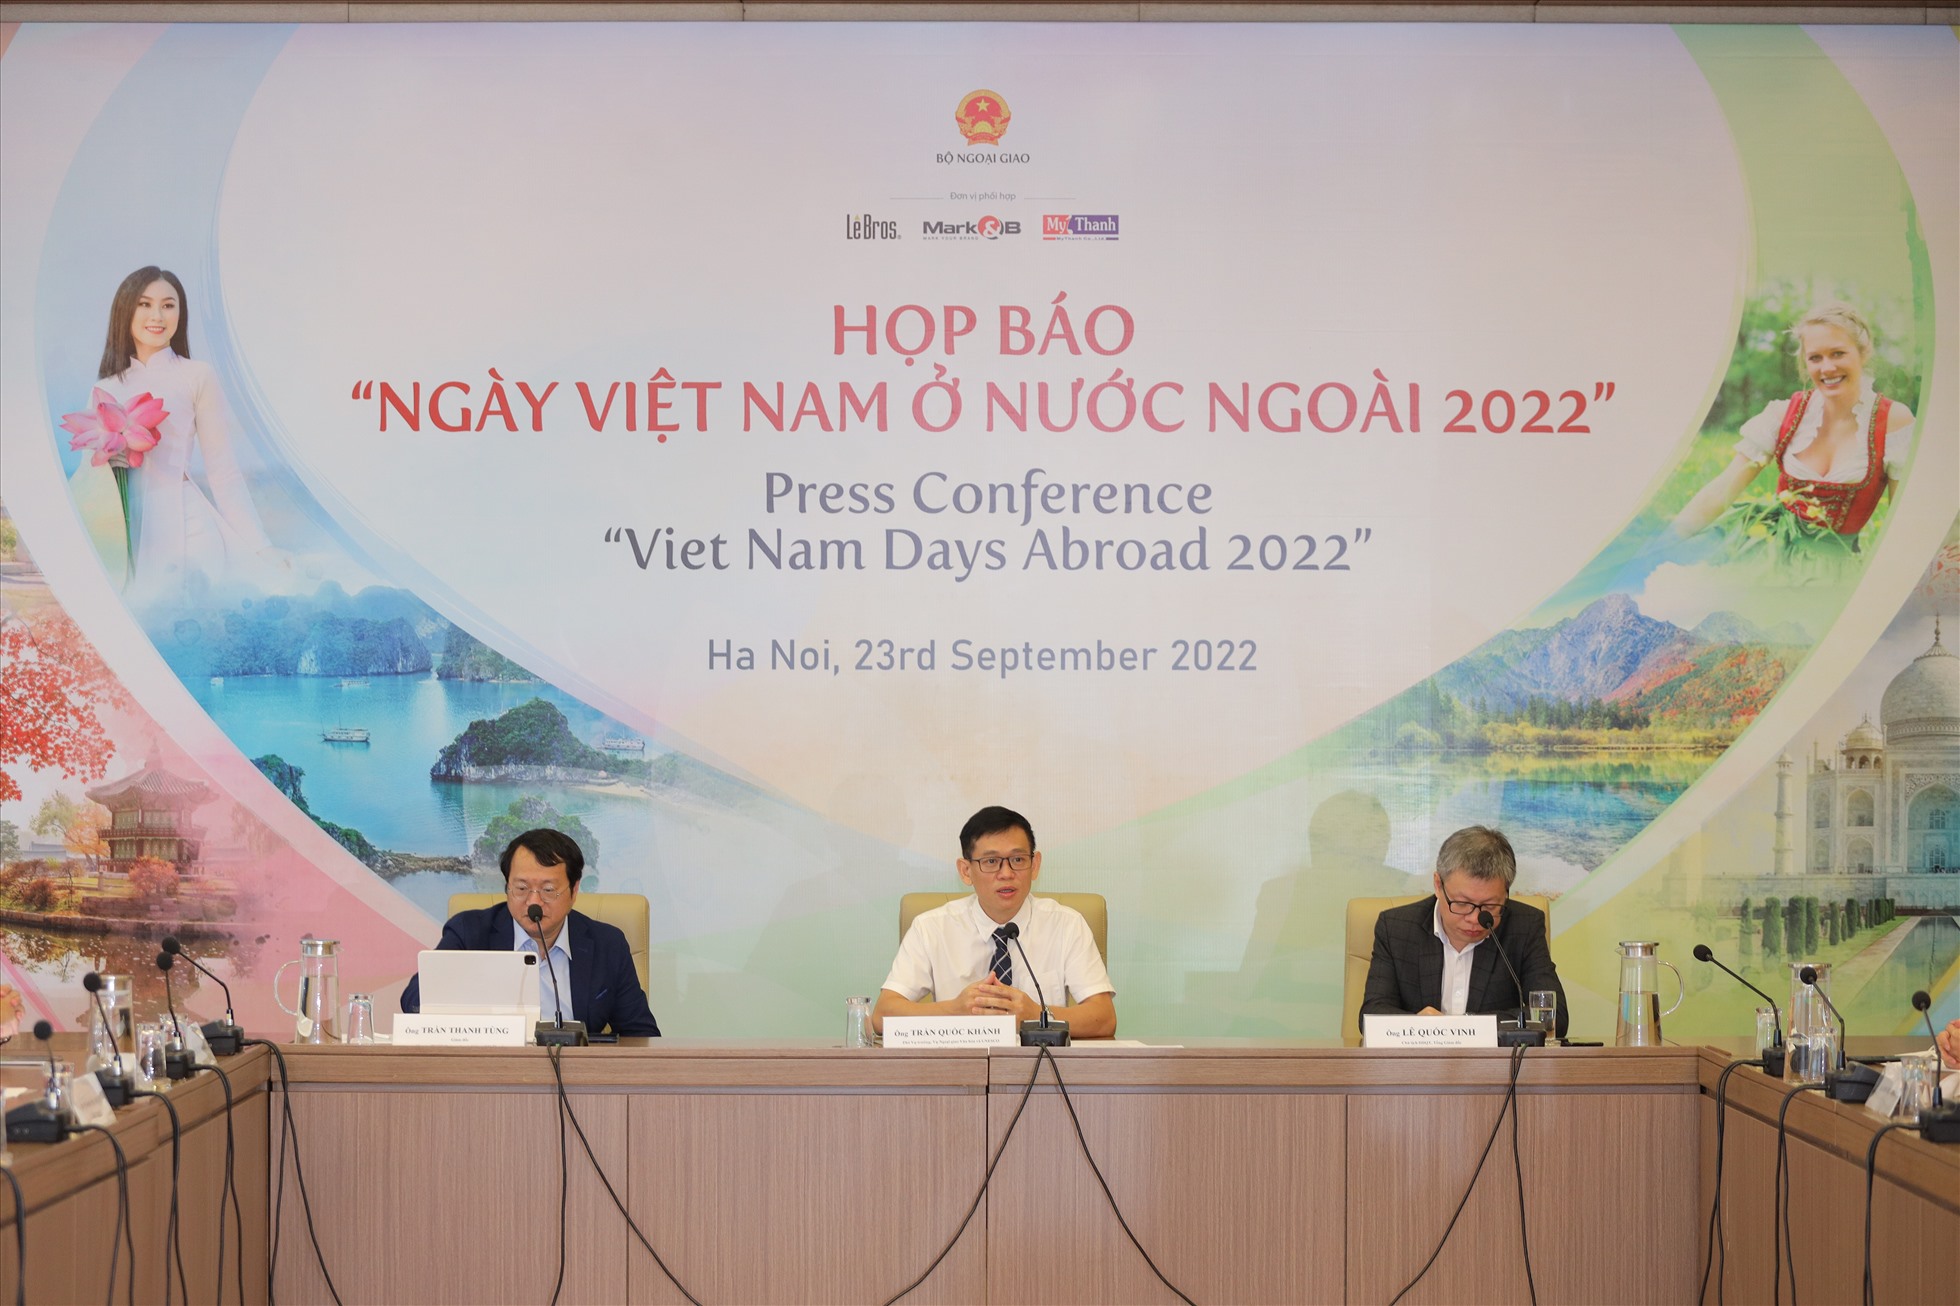 Buổi họp báo công bố “Ngày Việt Nam ở nước ngoài 2022” diễn ra vào sáng ngày 23.9 tại Hà Nội. Ảnh: BTC